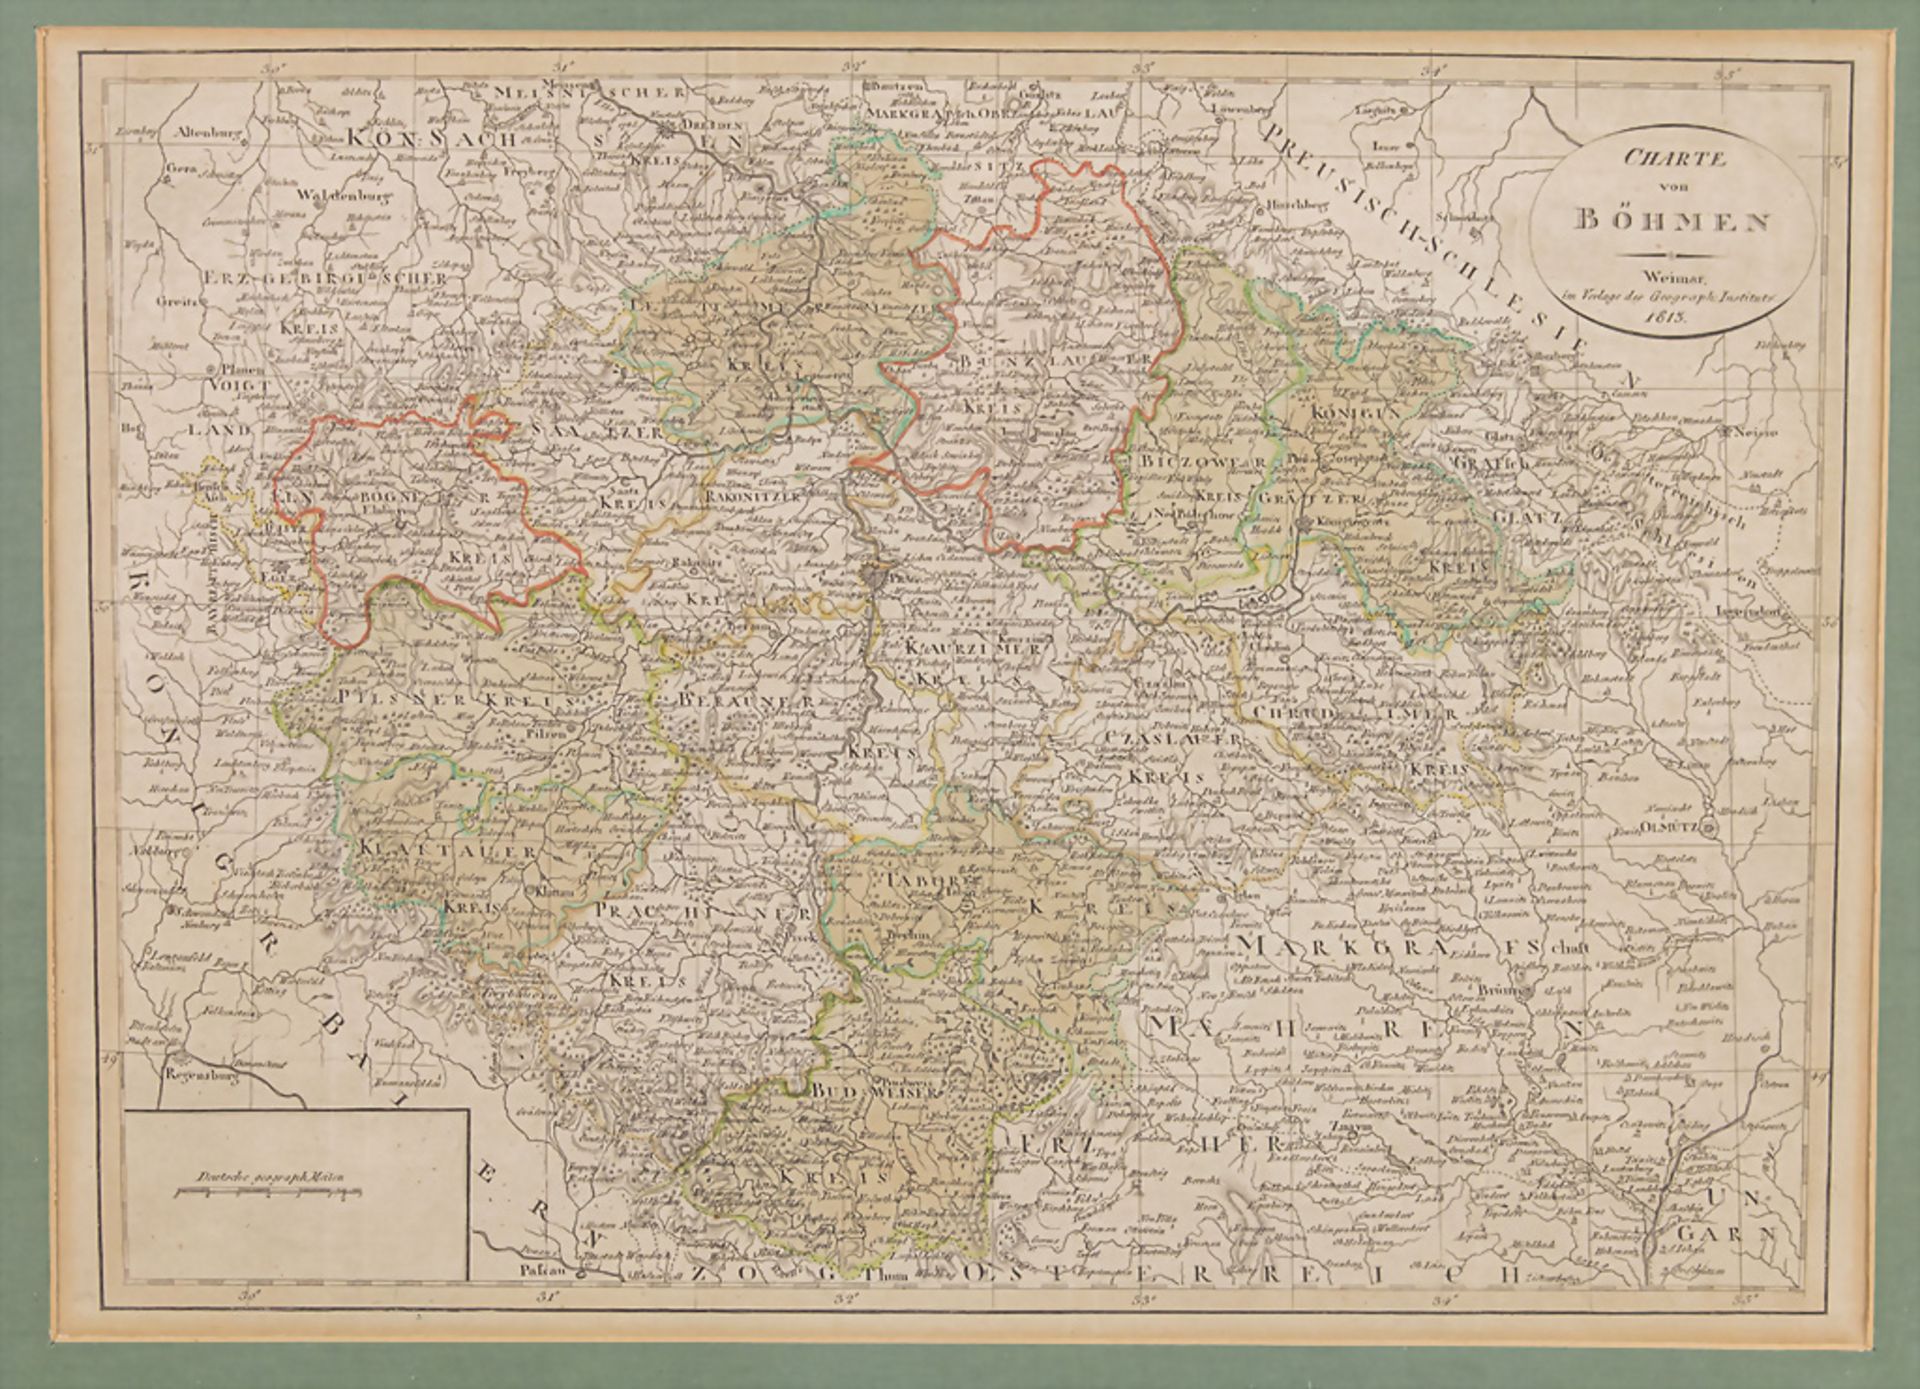 Landkarte von Böhmen / A map of Bohemia, Weimar, 1813